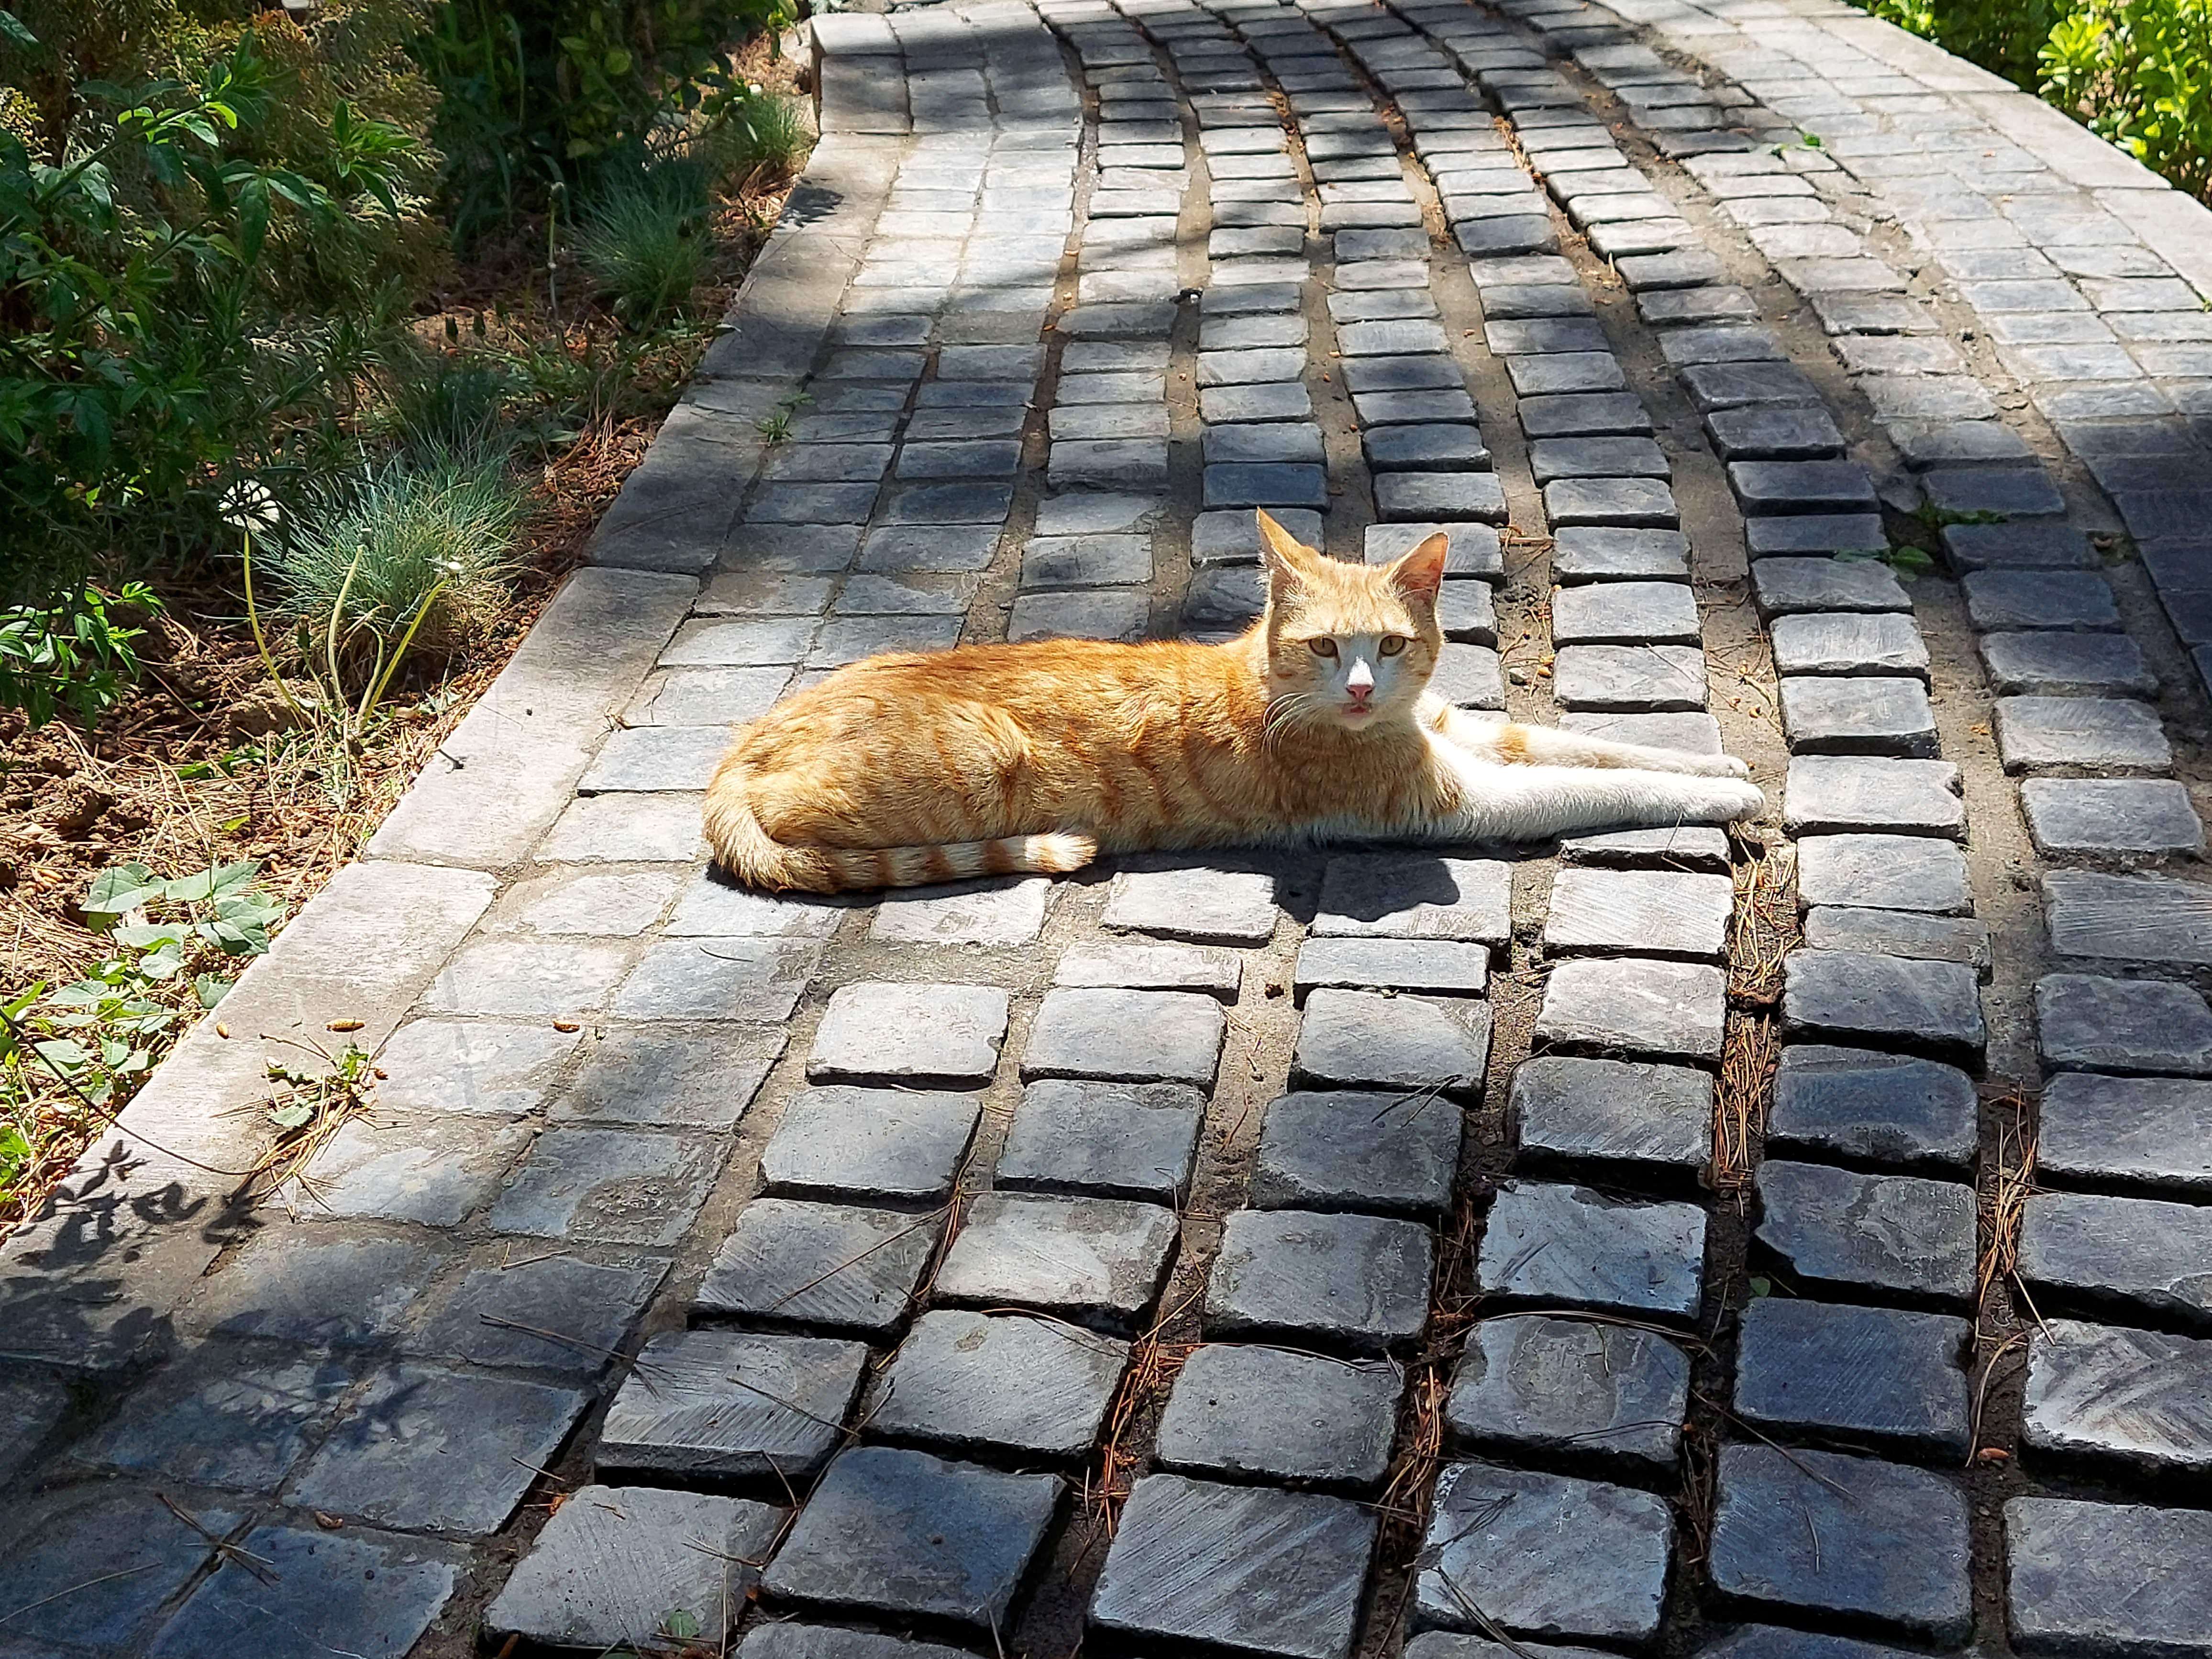 عکس نمونه با زوم ۲ برابری گلکسی M51 سامسونگ - گربه ای در پارک صبا خیابان جردن